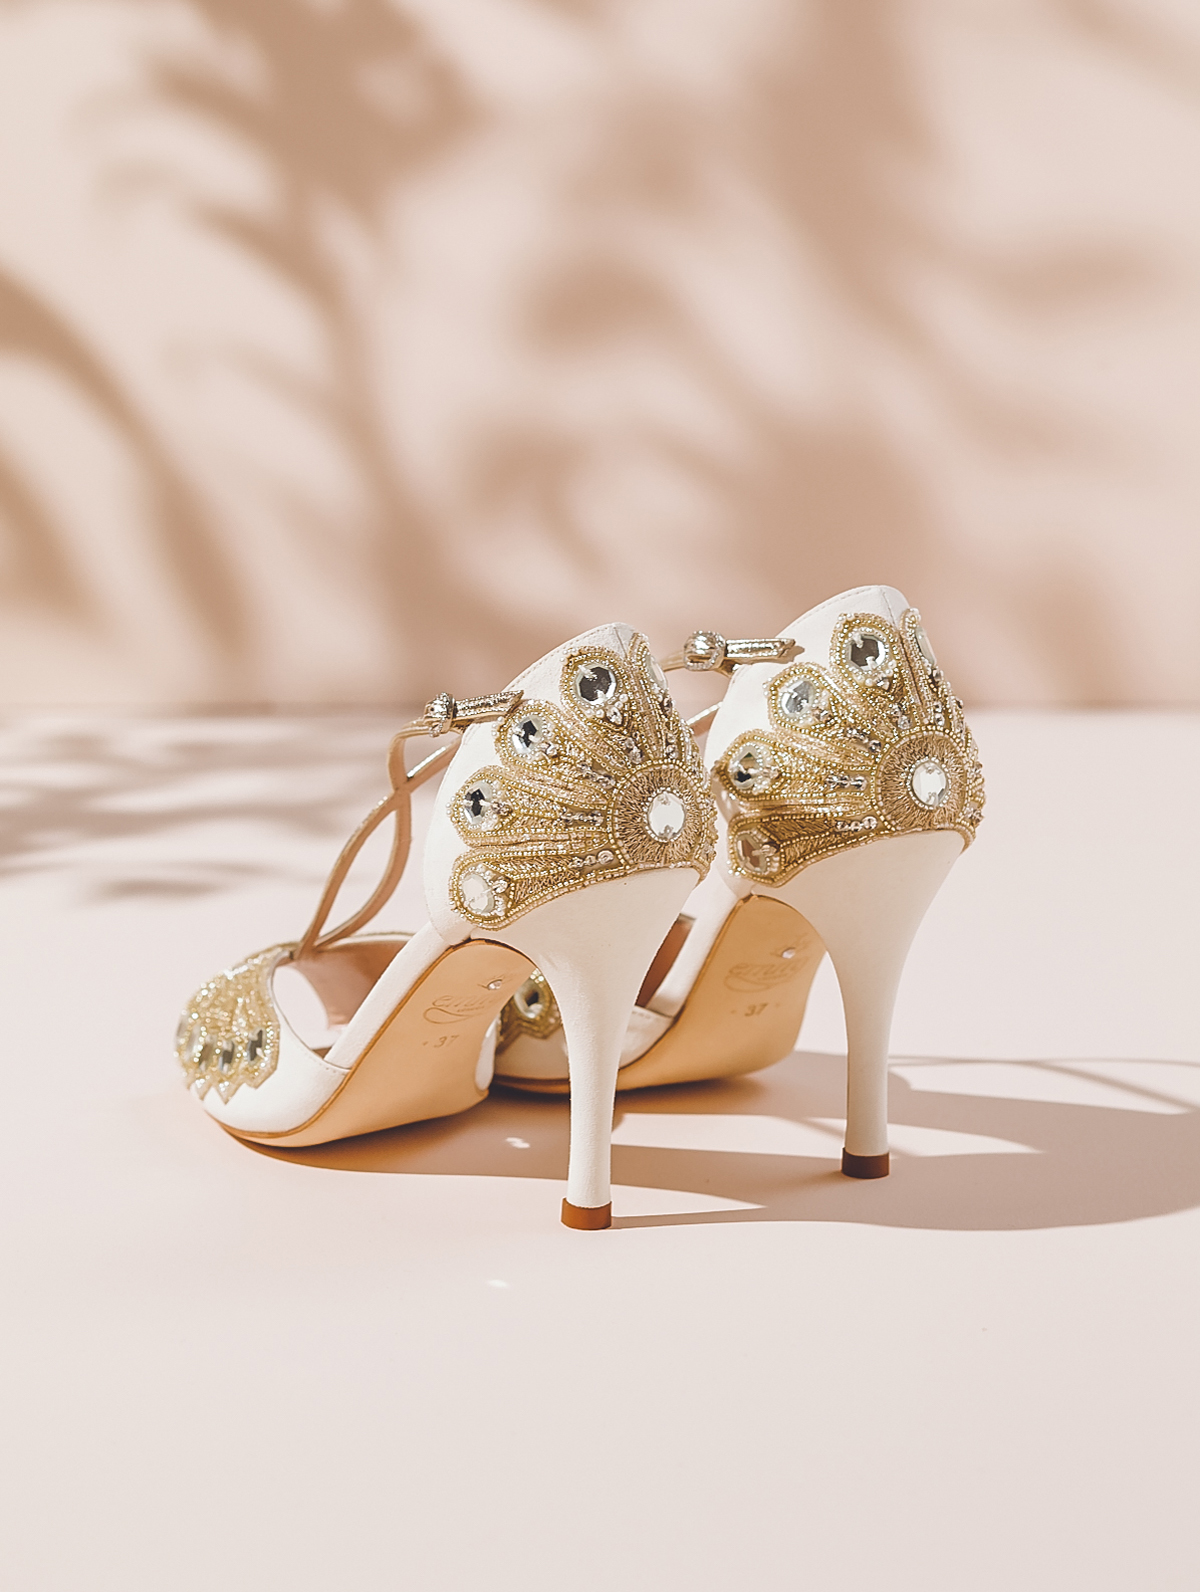 Emmy London luxury comfortable wedding shoes.